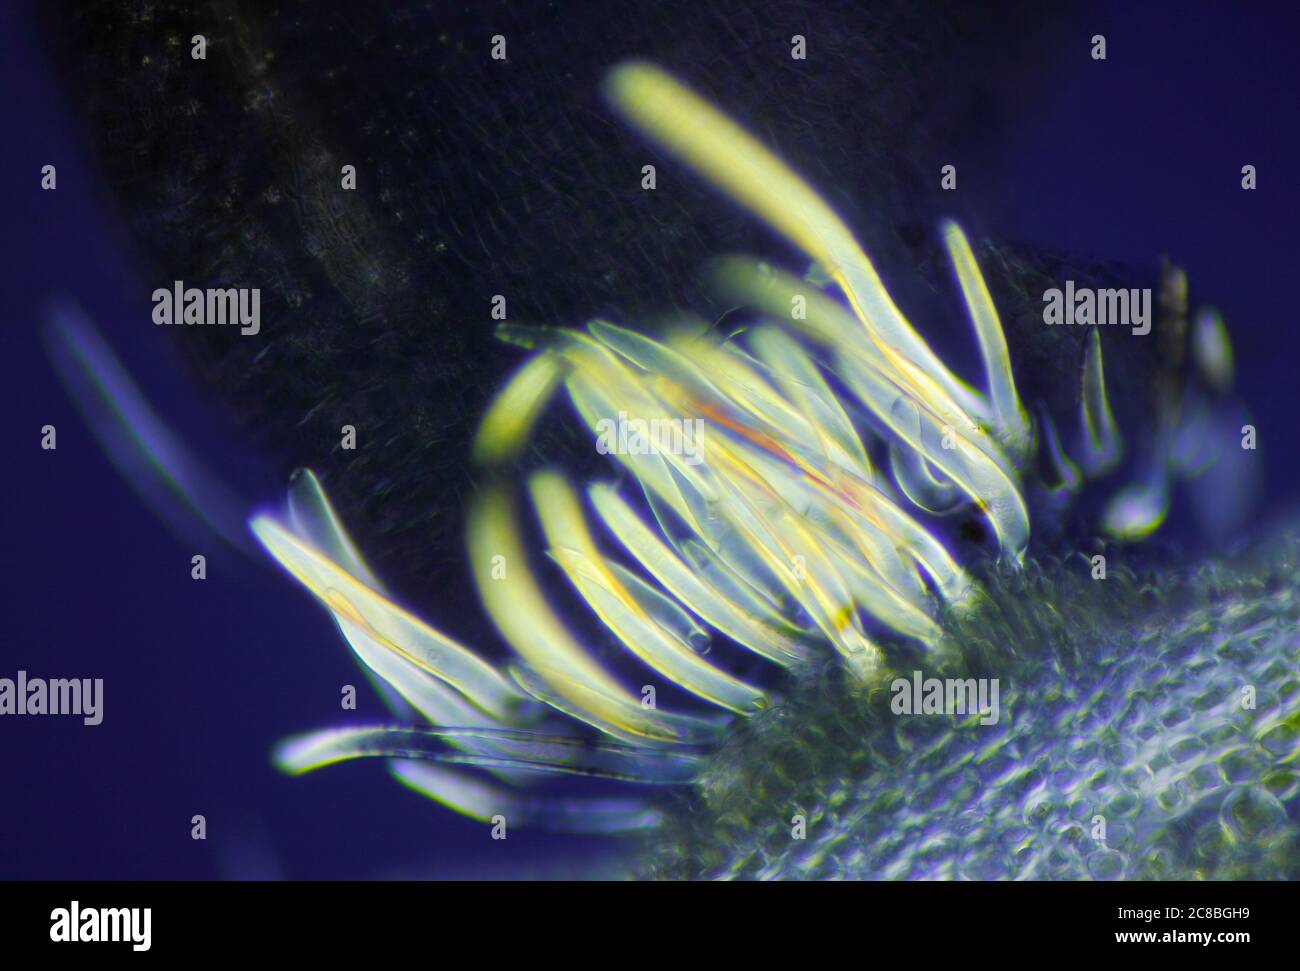 Mikroskopische Ansicht einer Daphne mezereum Pflanze Detail. Polarisiertes Licht, gekreuzte Polarisatoren. Stockfoto